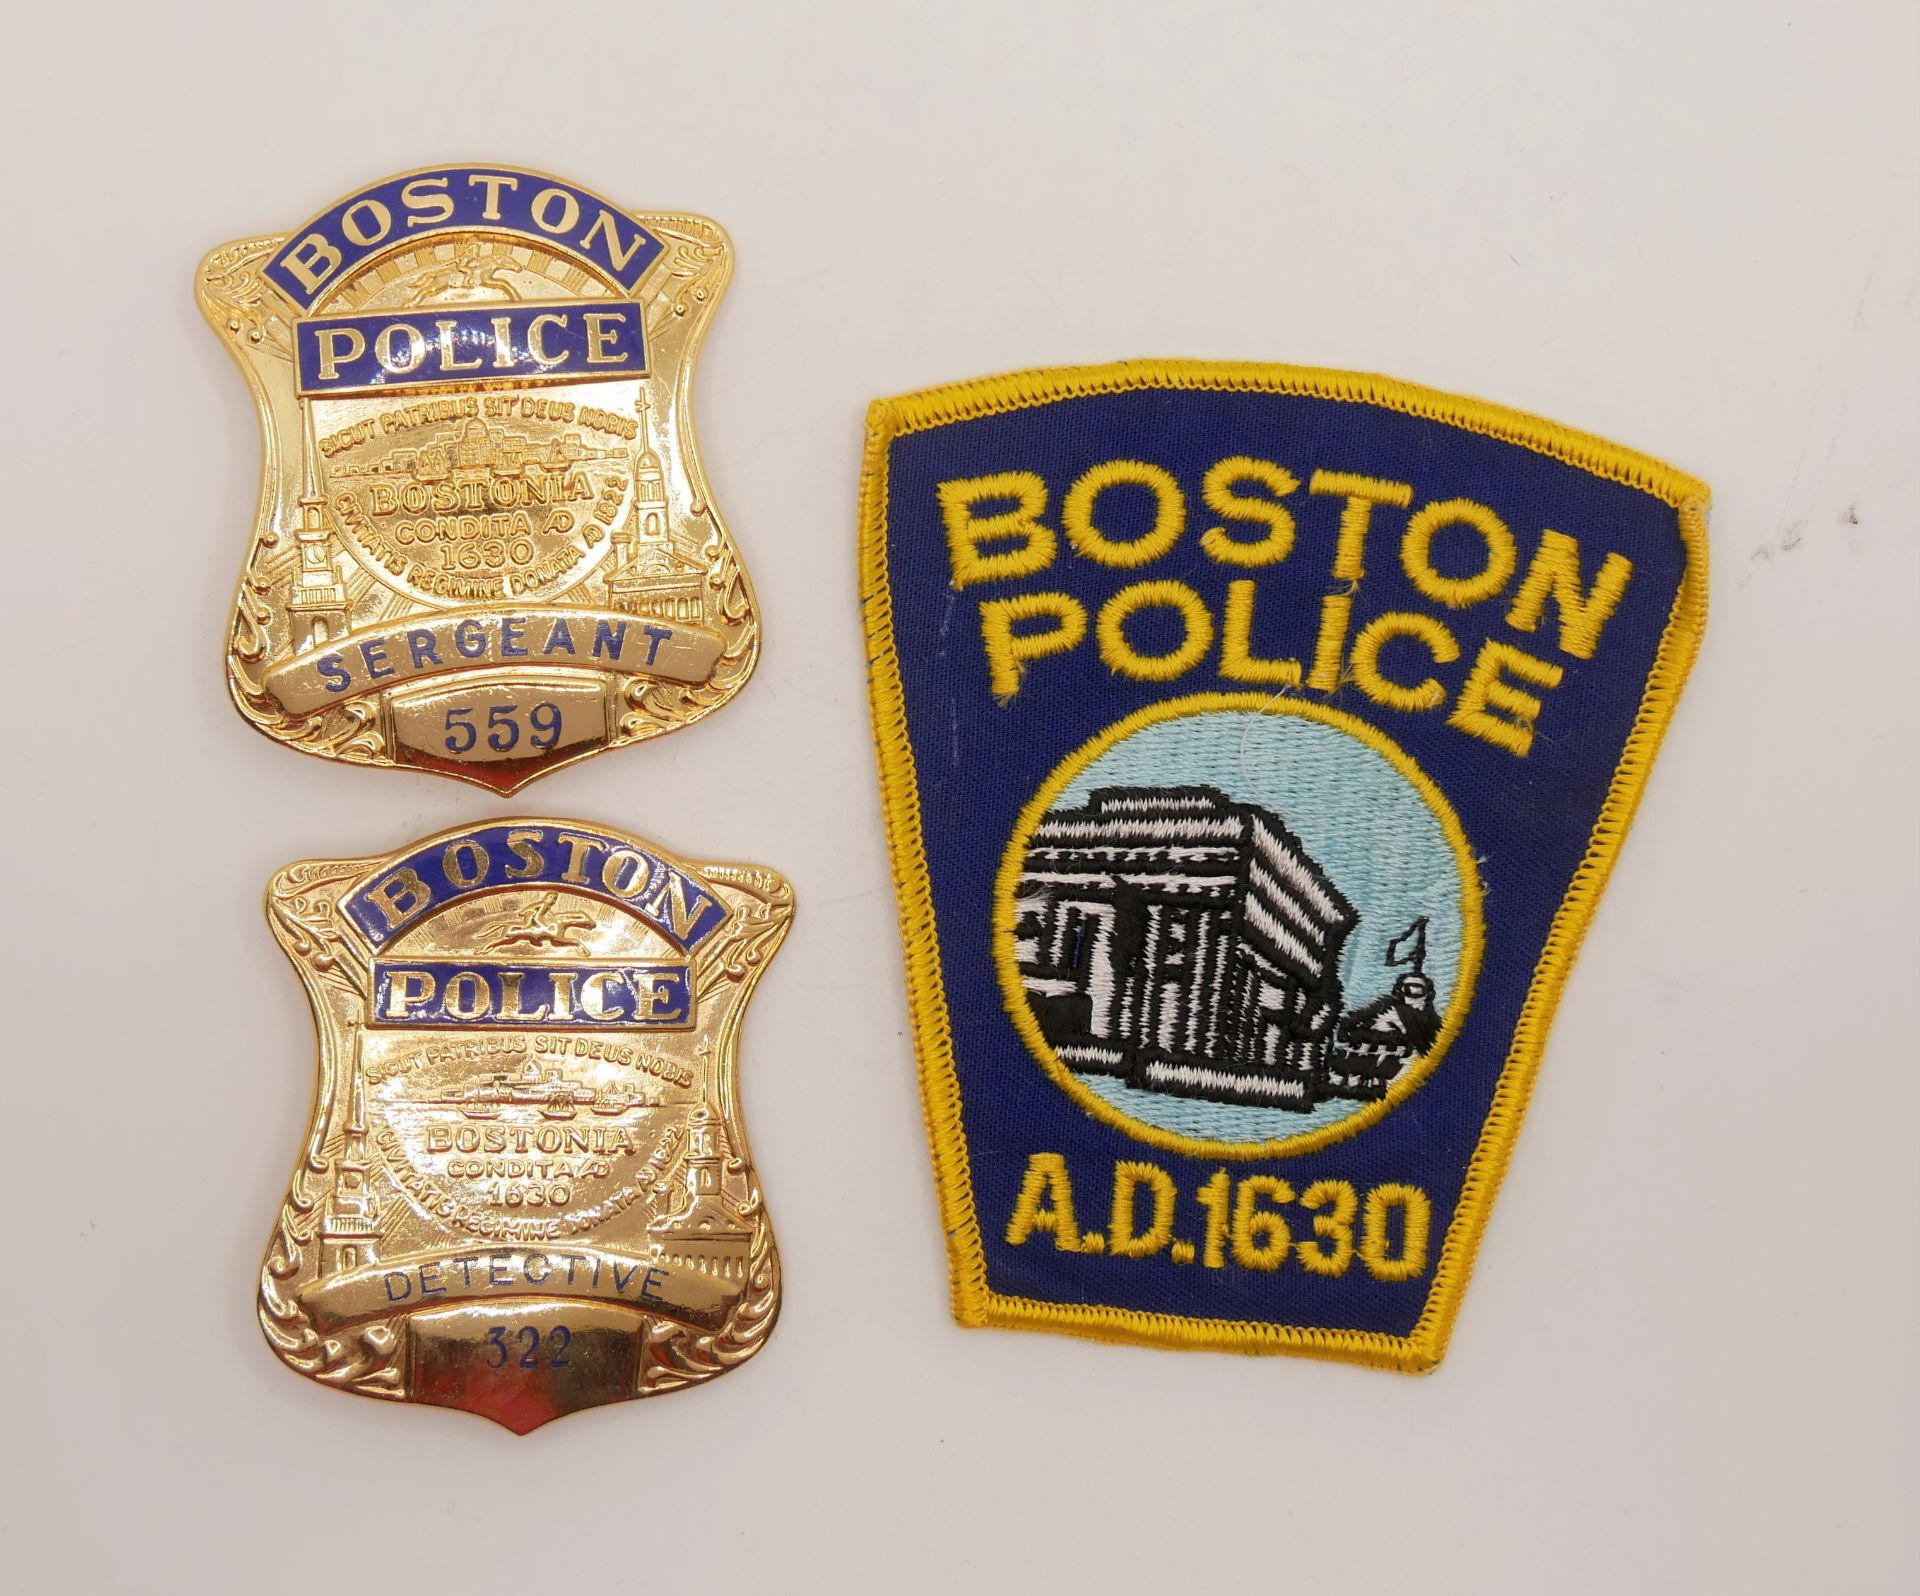 Aus Sammelauflösung! Aufnäher / Patches sowie 2 Marke "Boston Police" insgesamt 3 Stück. Bitte